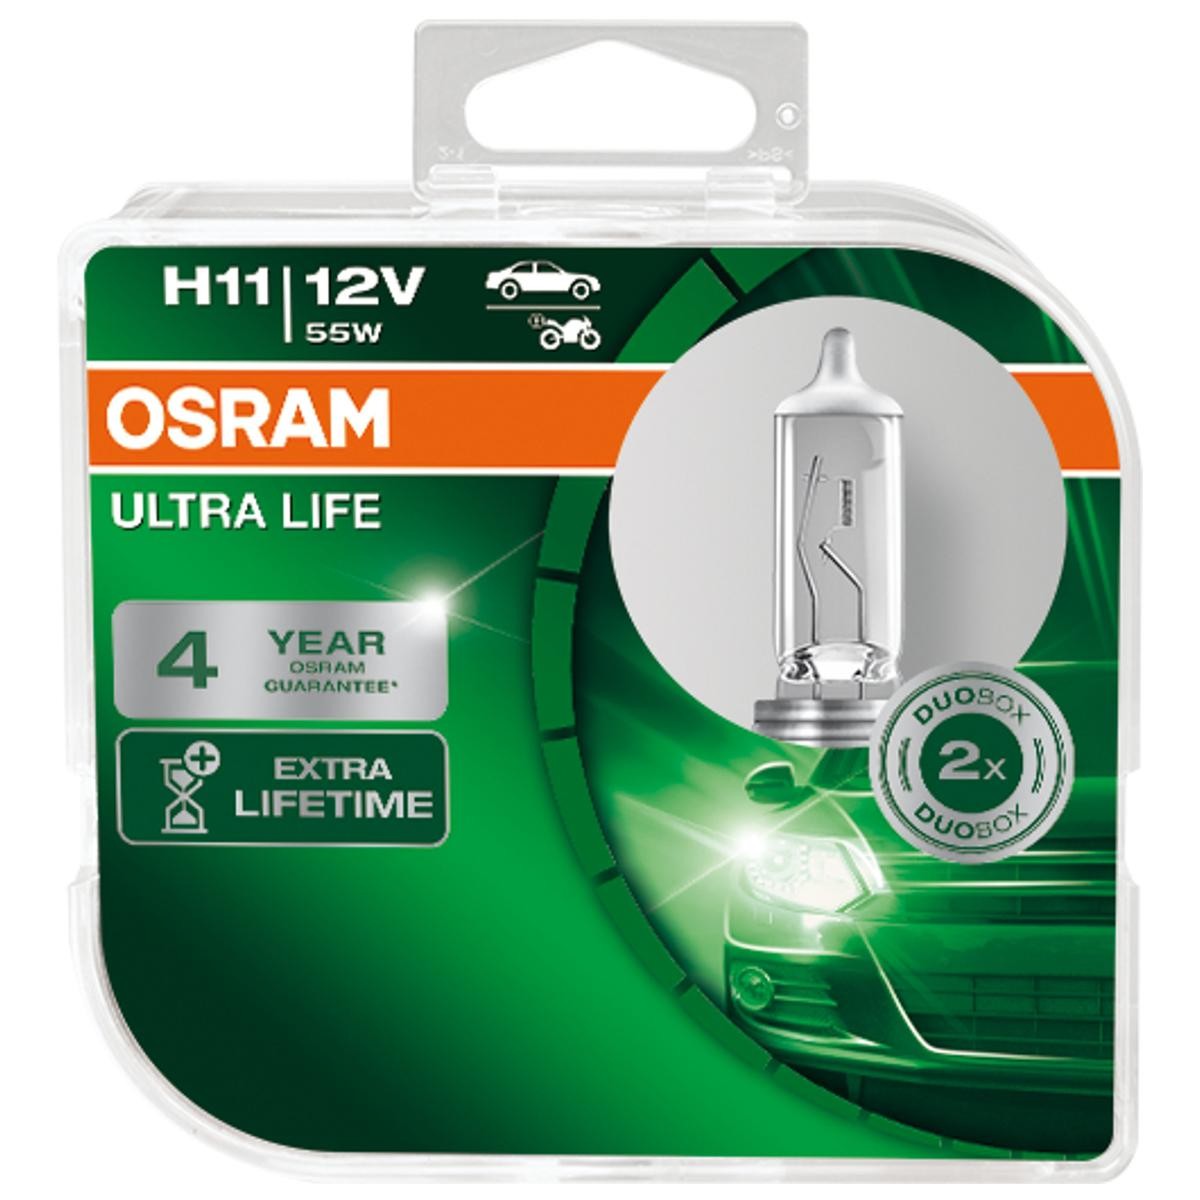 H11 OSRAM ULTRA LIFE H11 12V 55W PGJ19-2, 4200K, Halogen Main beam bulb 64211ULT-HCB buy